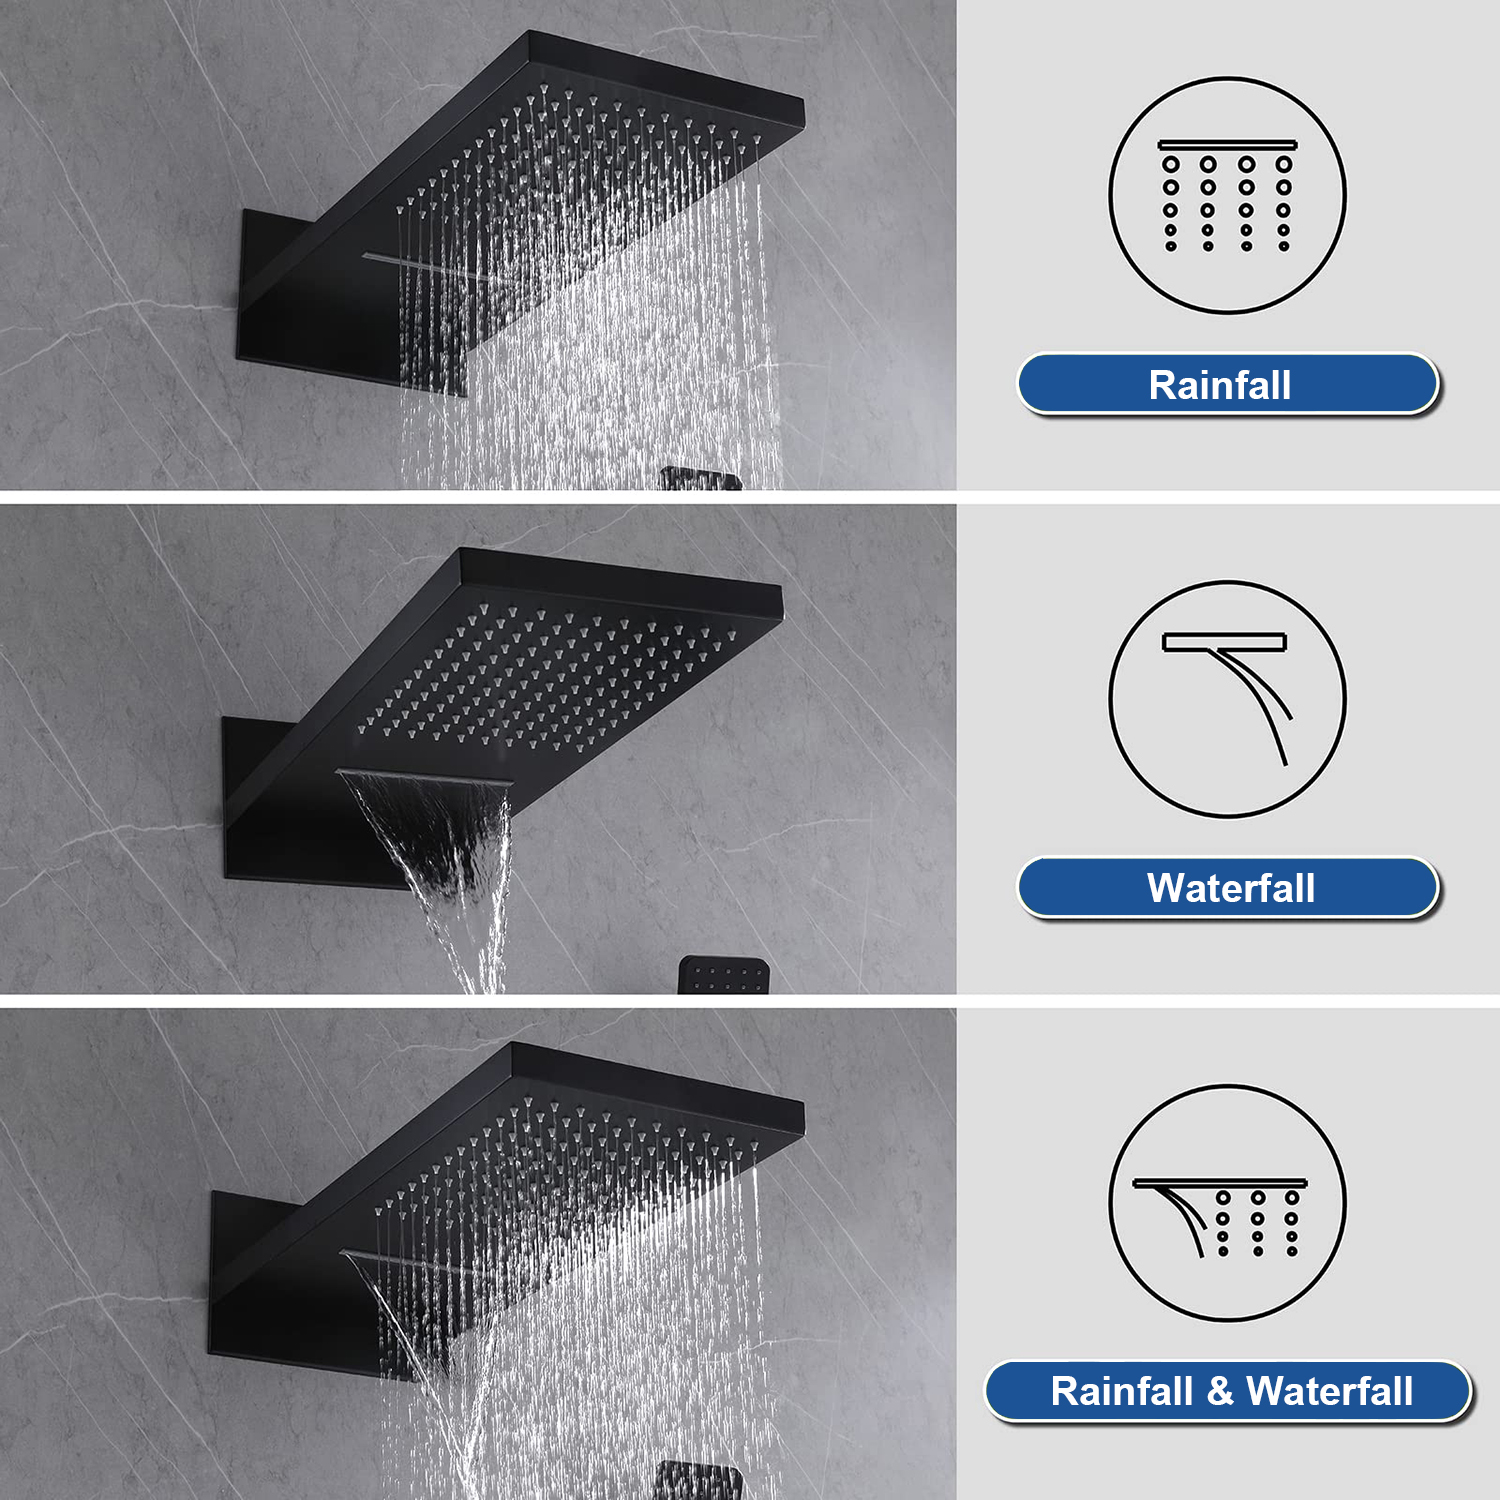 Sistema di soffione doccia a pioggia montato a parete in fabbrica in Cina con valvola miscelatrice termostatica e set combinato doccia portatile